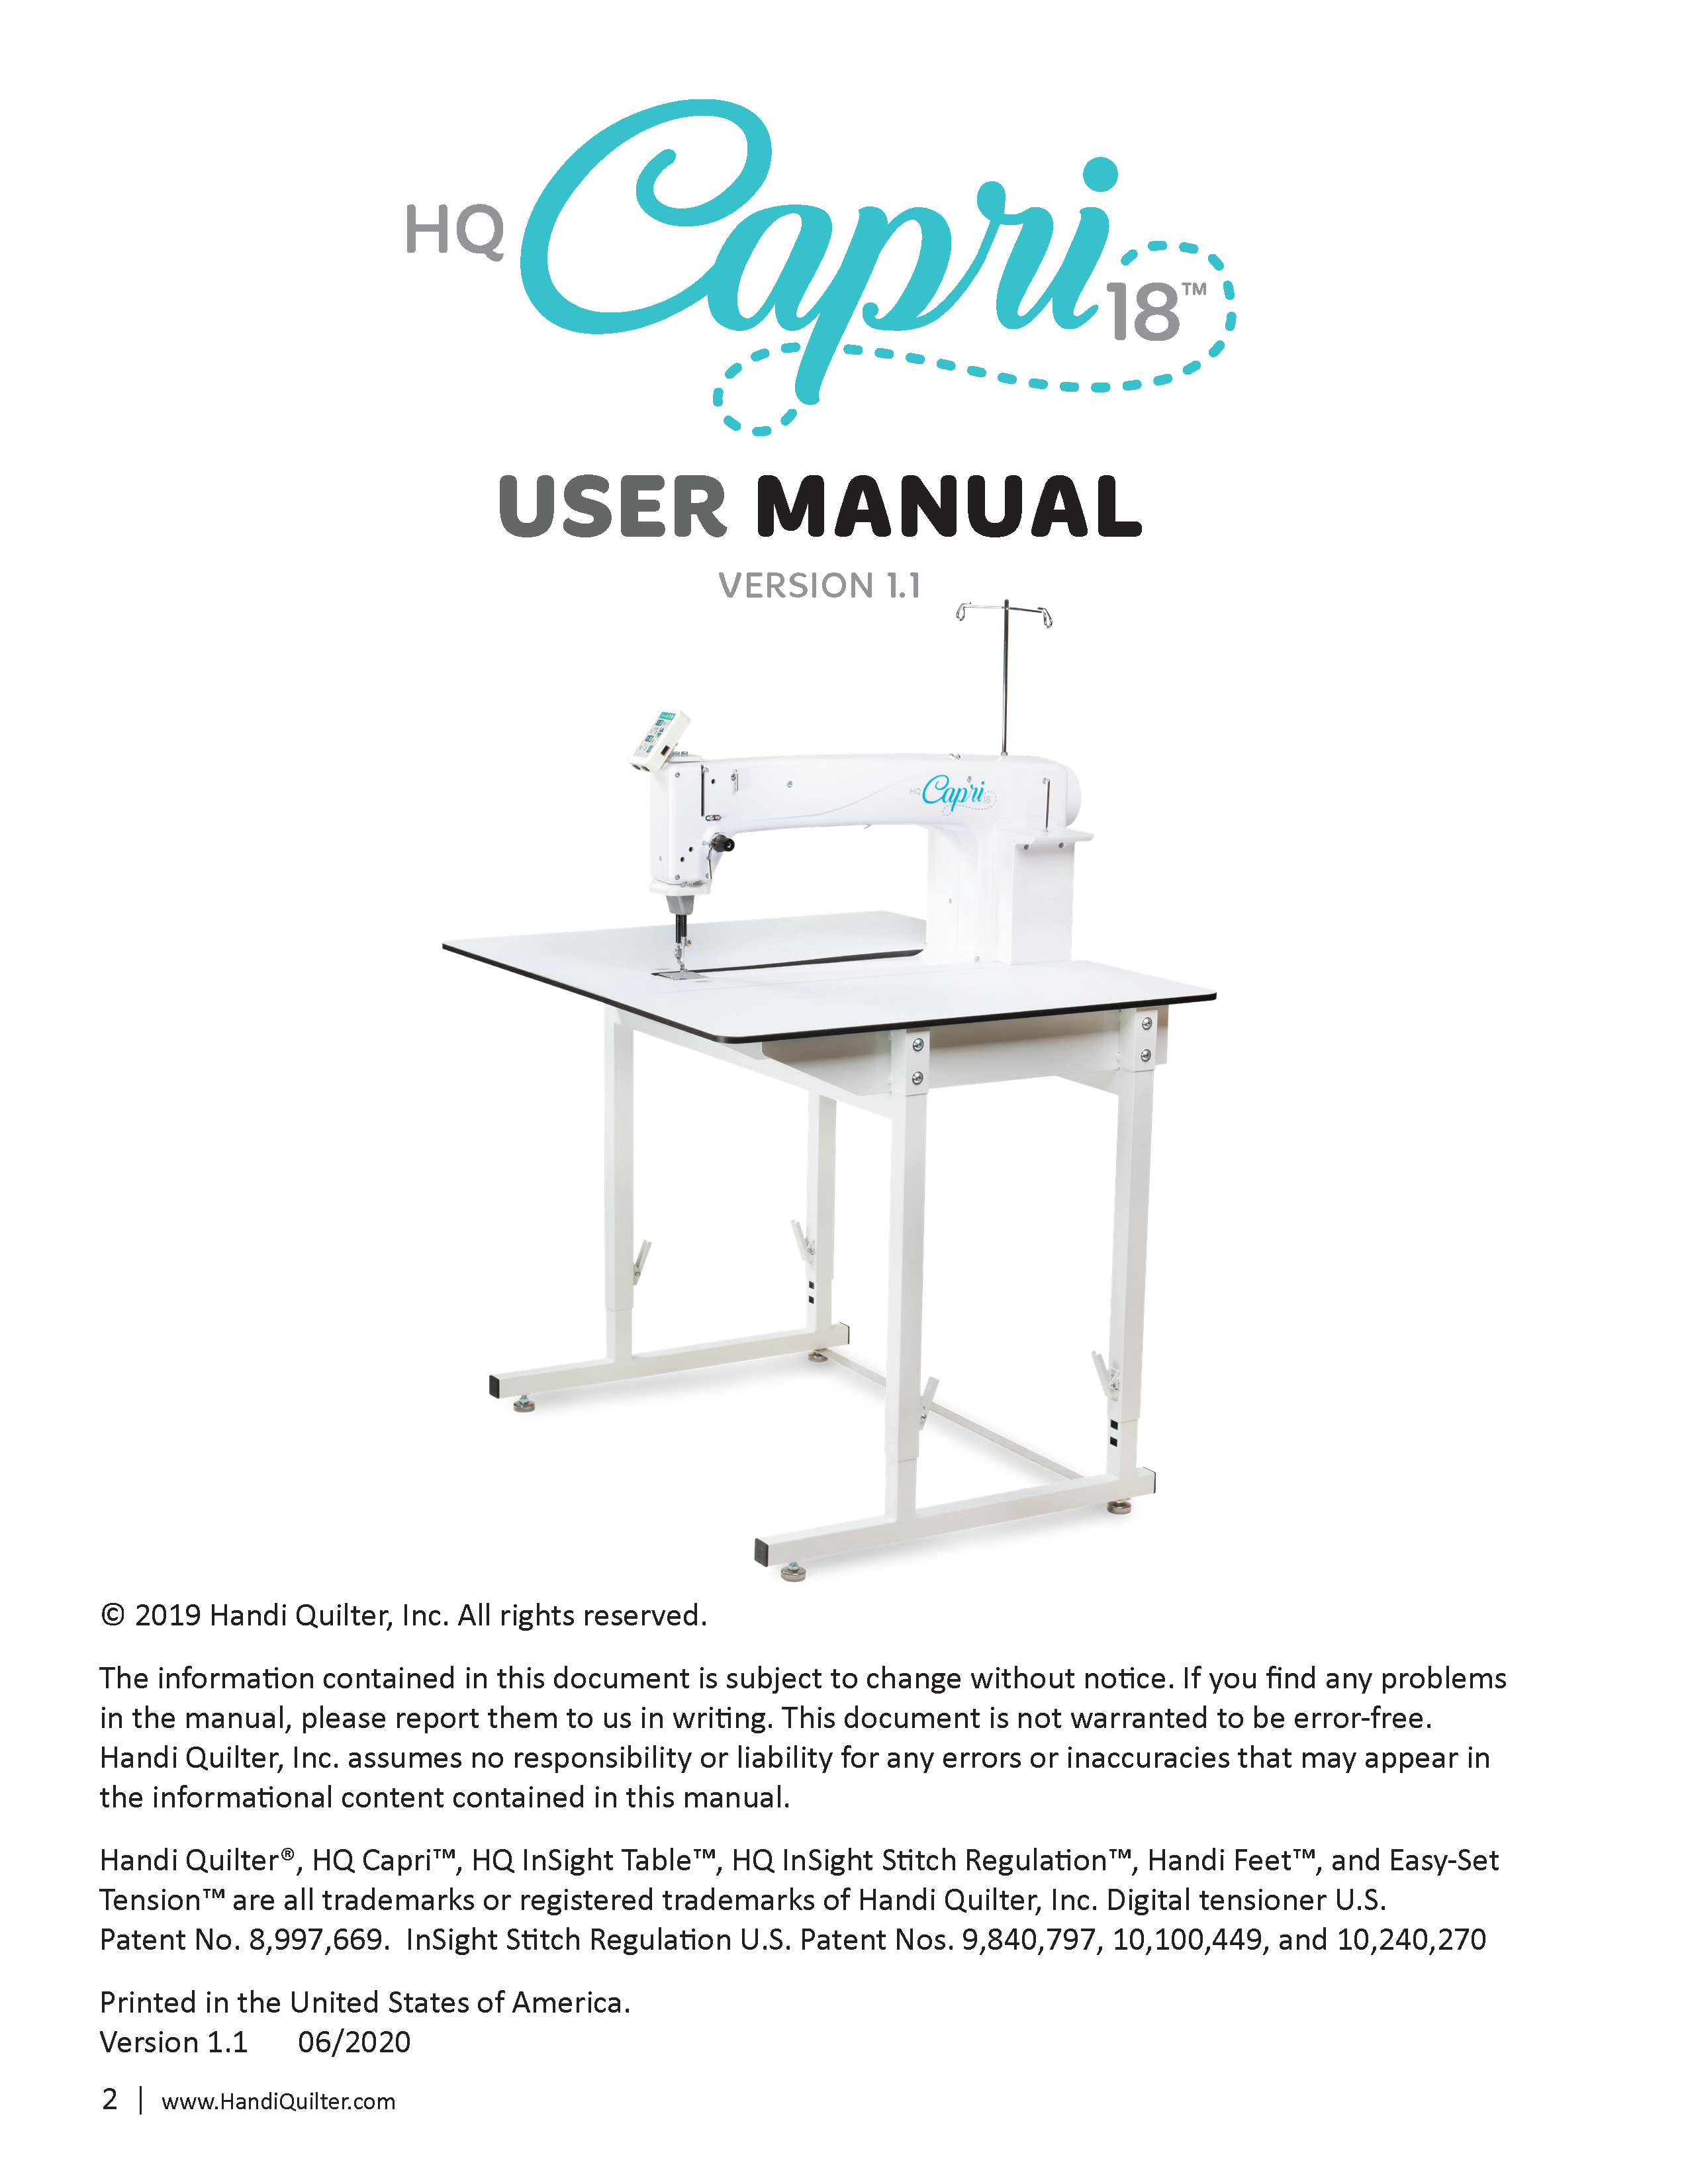 HQ-Capri-User-manual-version-1.1-June-2020-06-24-20-_Page_02.png